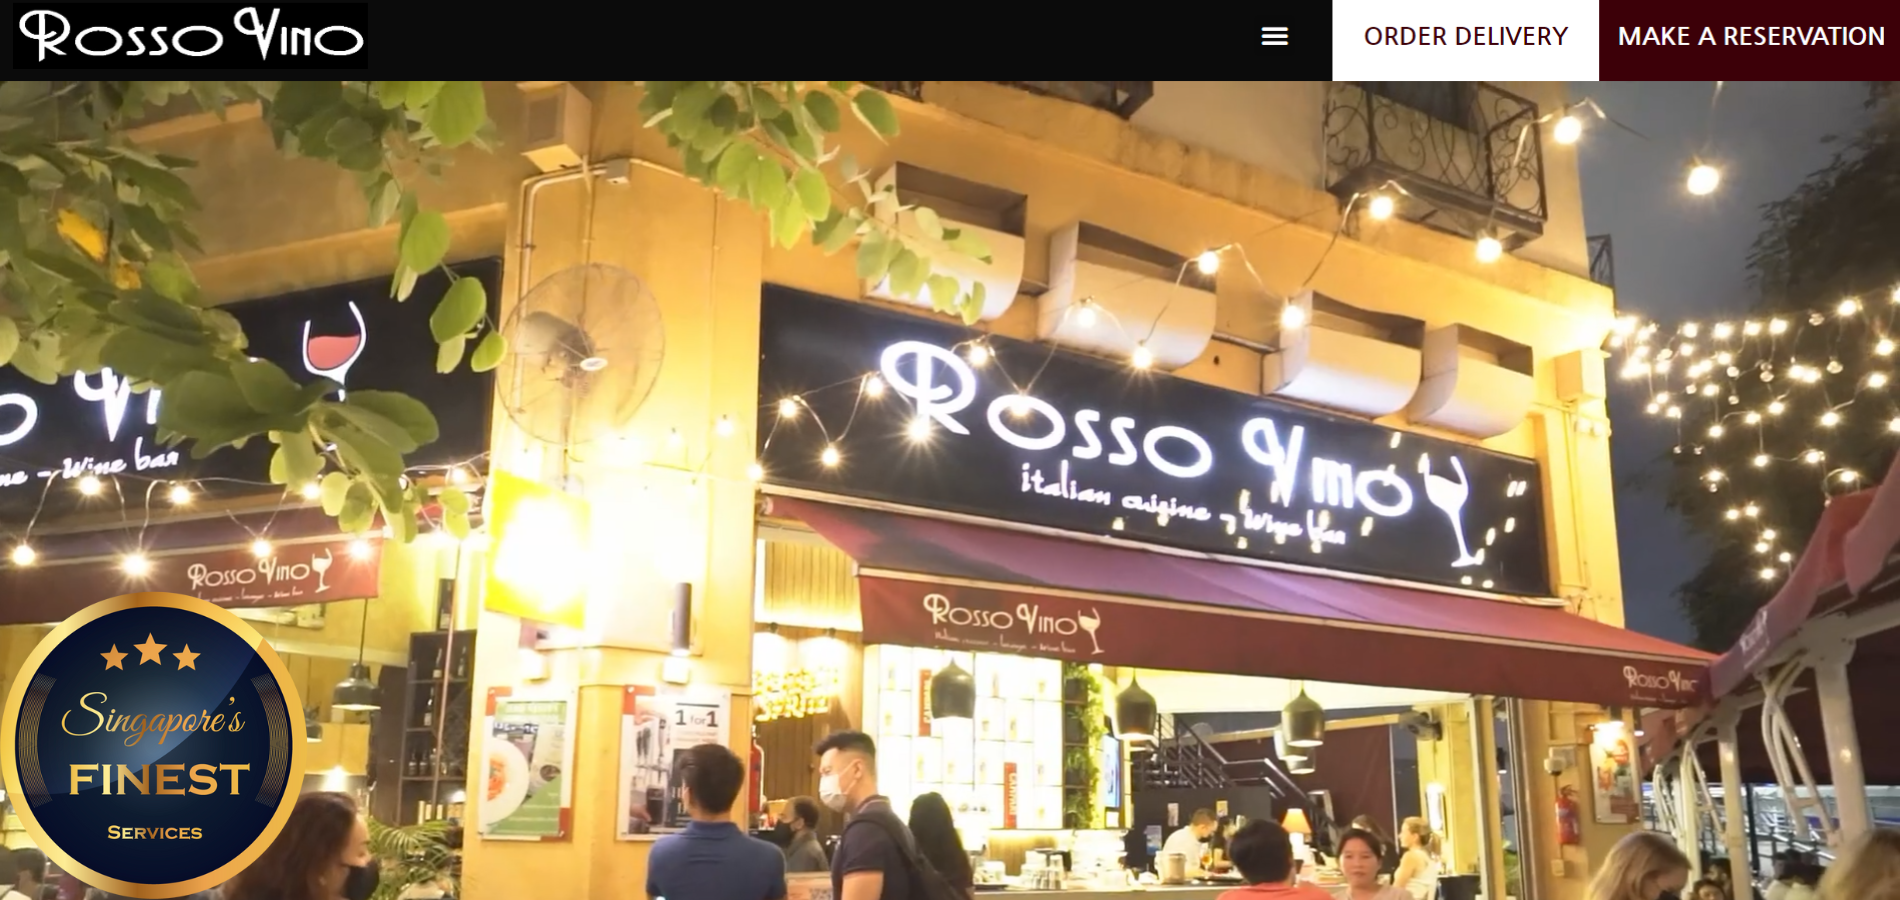 Best Italian Restaurant in Singapore